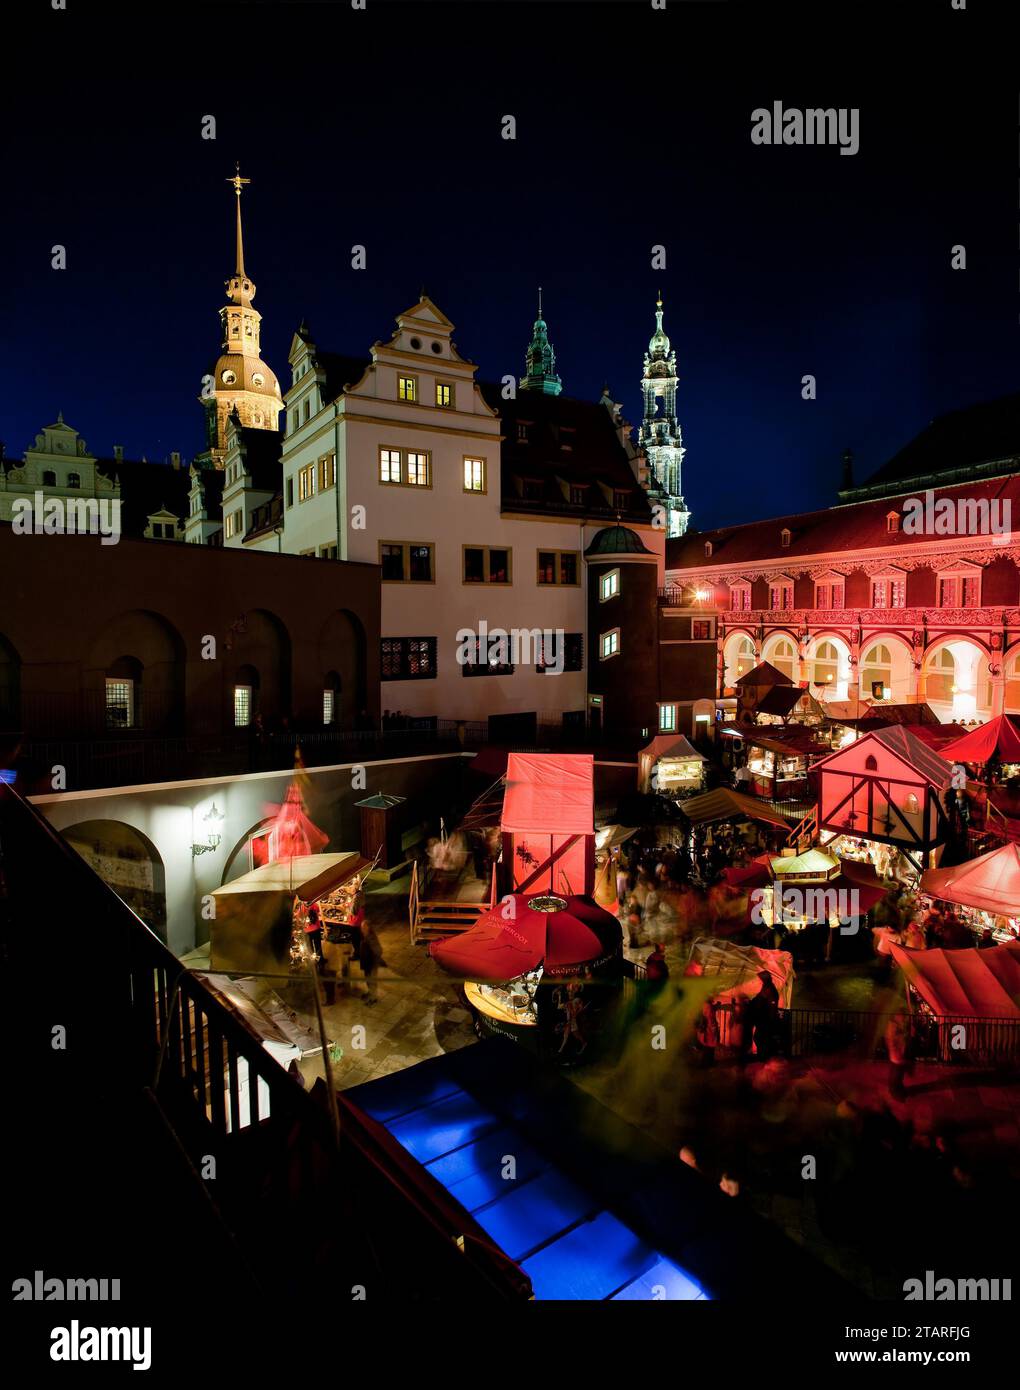 Il nostalgico mercatino di Natale nel cortile stabile del Palazzo della Residenza di Dresda offre anche momenti tranquilli e romantici nel trambusto natalizio Foto Stock